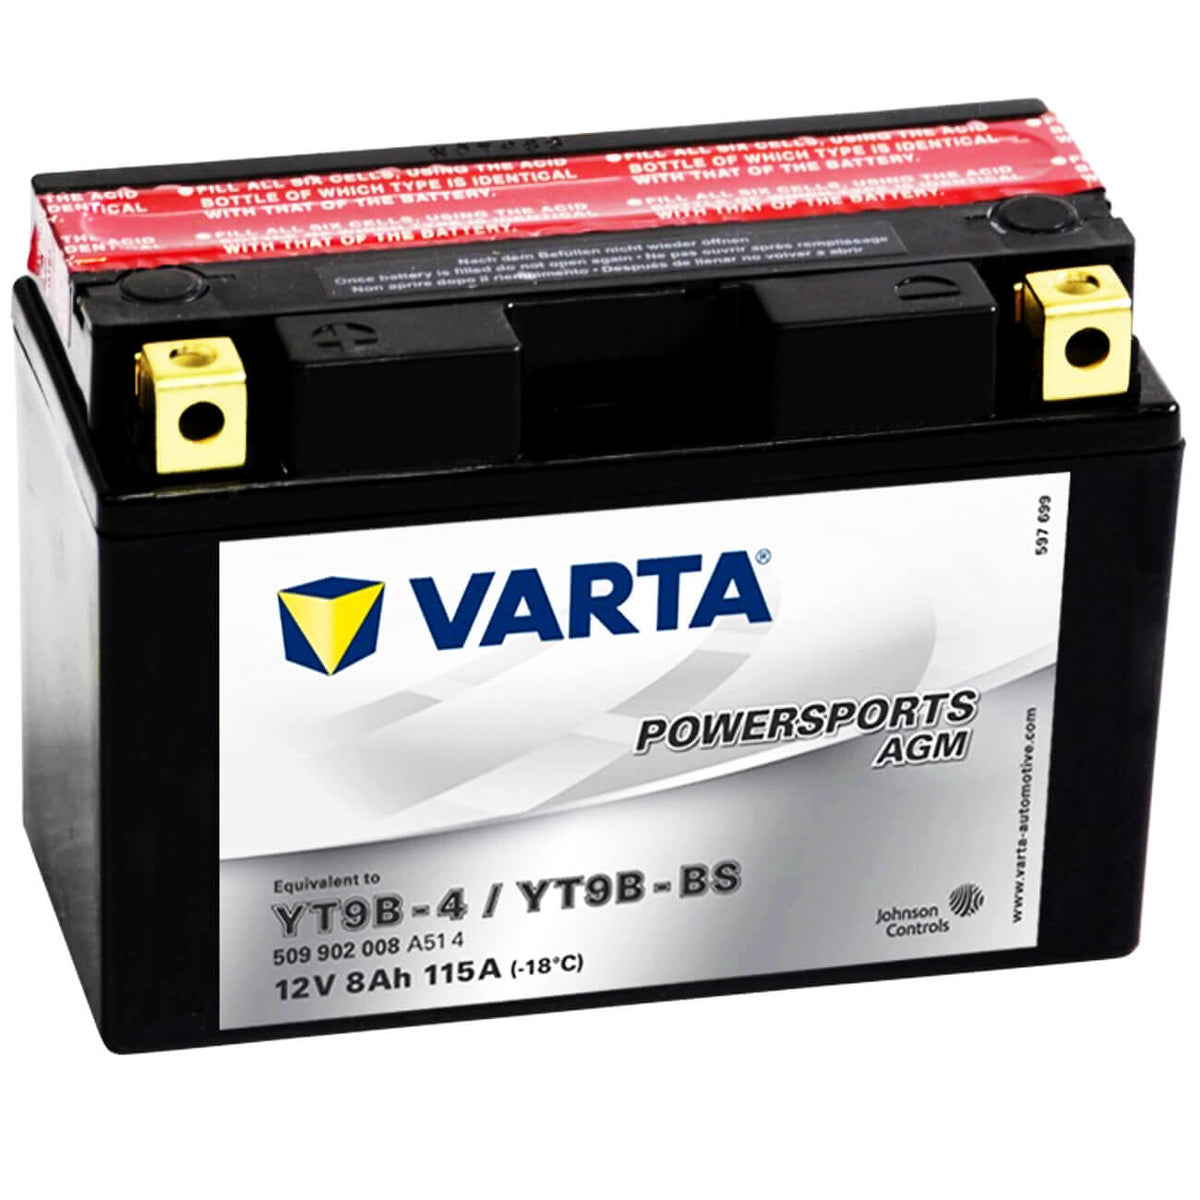 Varta Powersports 509902 AGM 12V 8Ah 115A